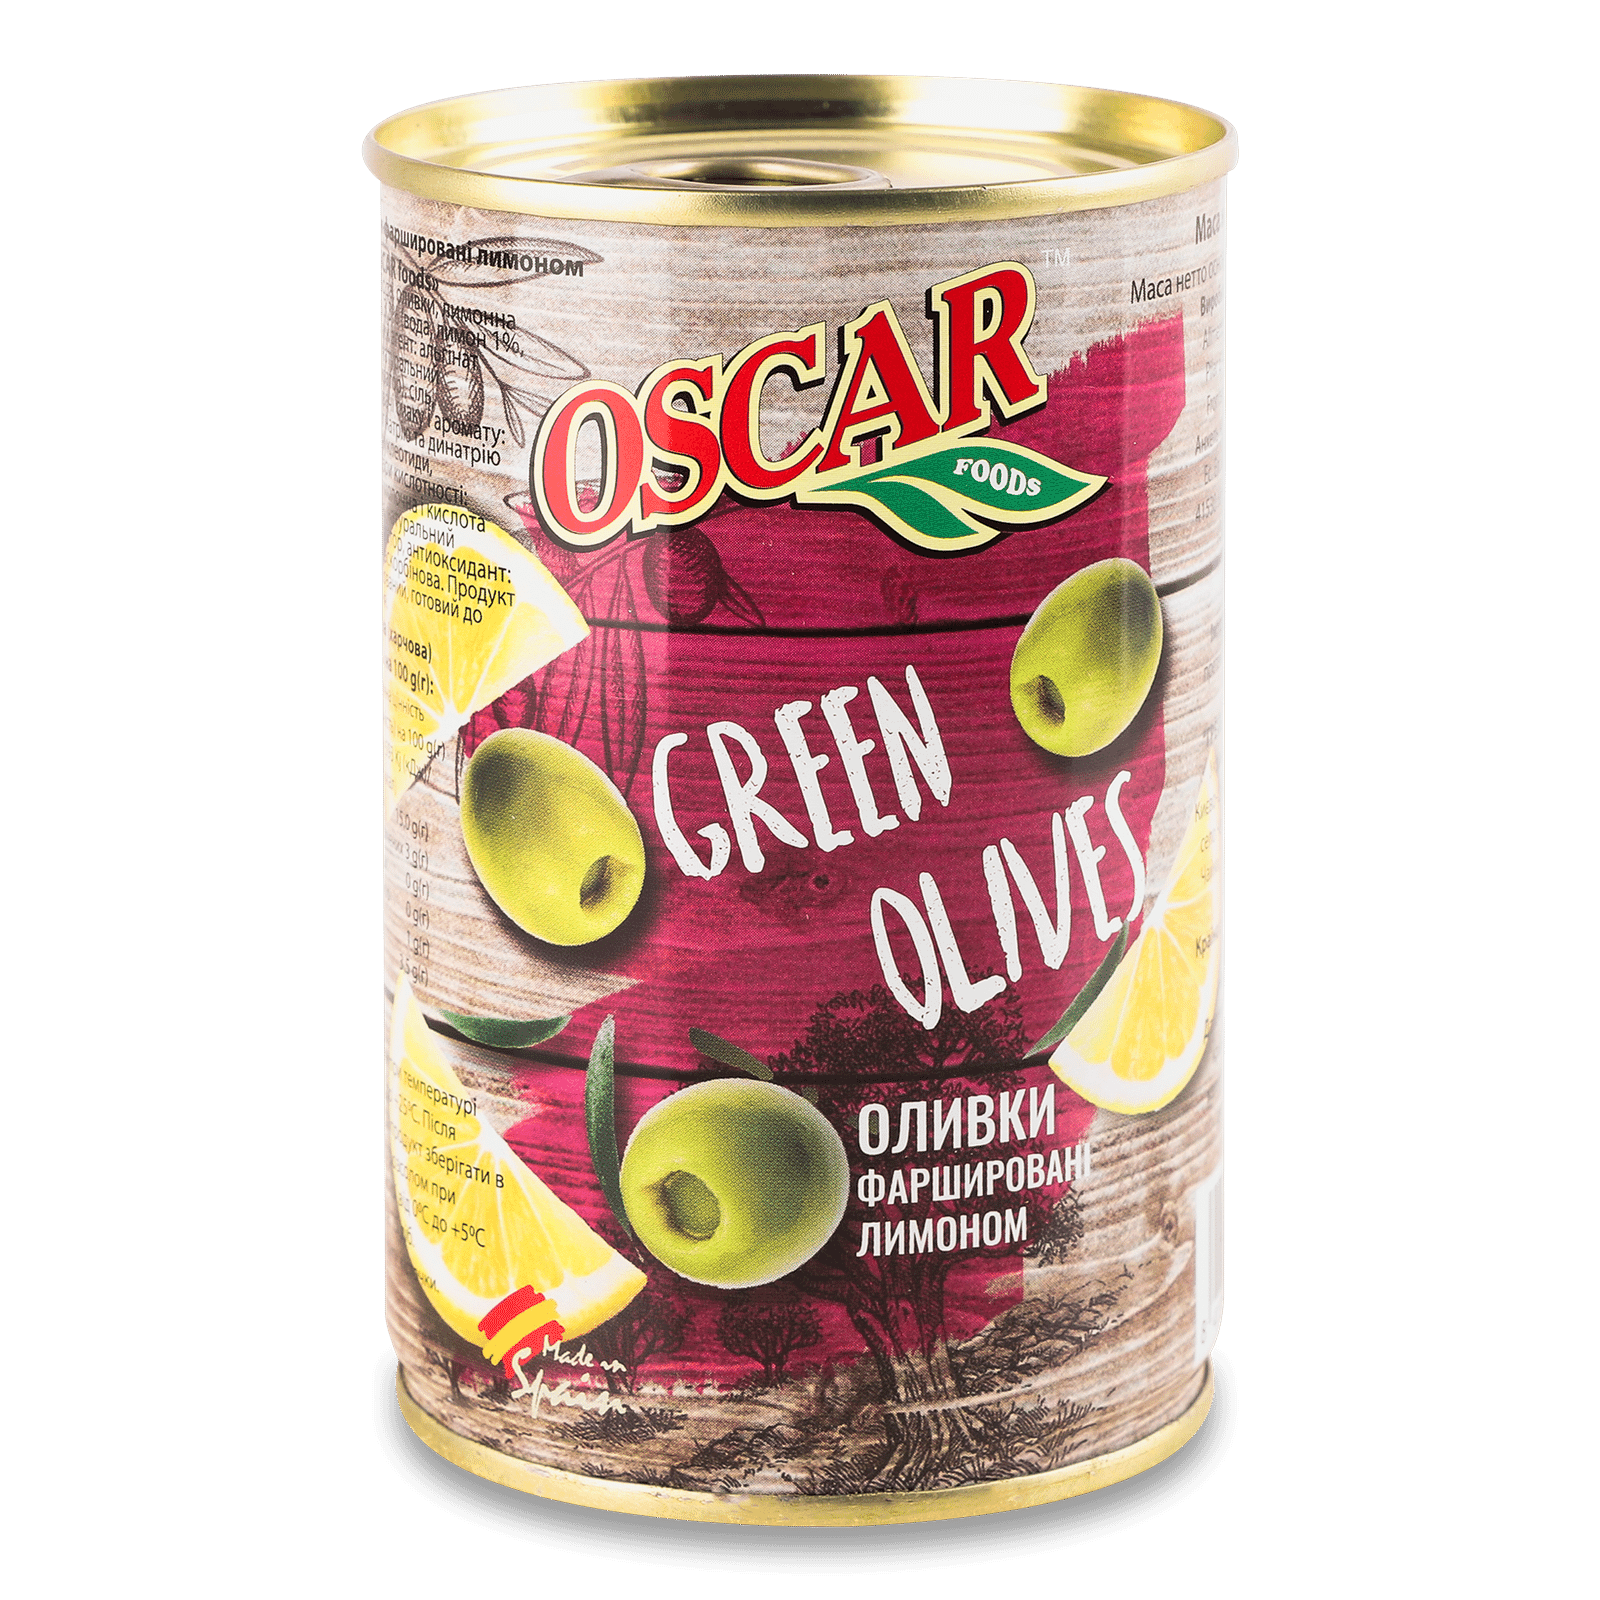 Оливки Oscar фаршировані лимоном - 1